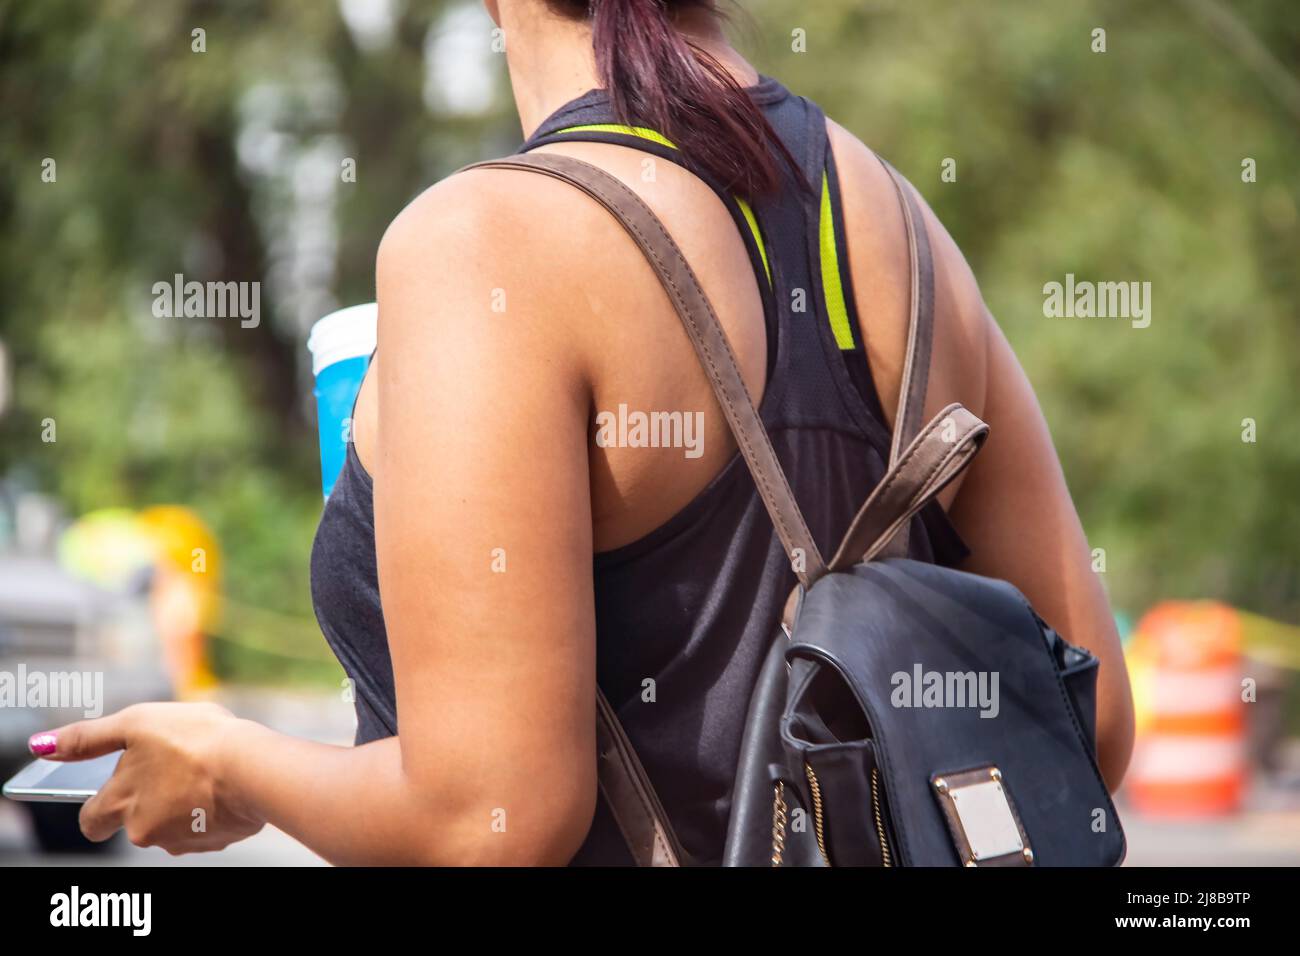 Une femme écourtée et méconnaissable avec un t-shirt d'été et un sac à dos en cuir marron et noir tient une boisson sans alcool et un téléphone portable sur fond de bokeh Banque D'Images